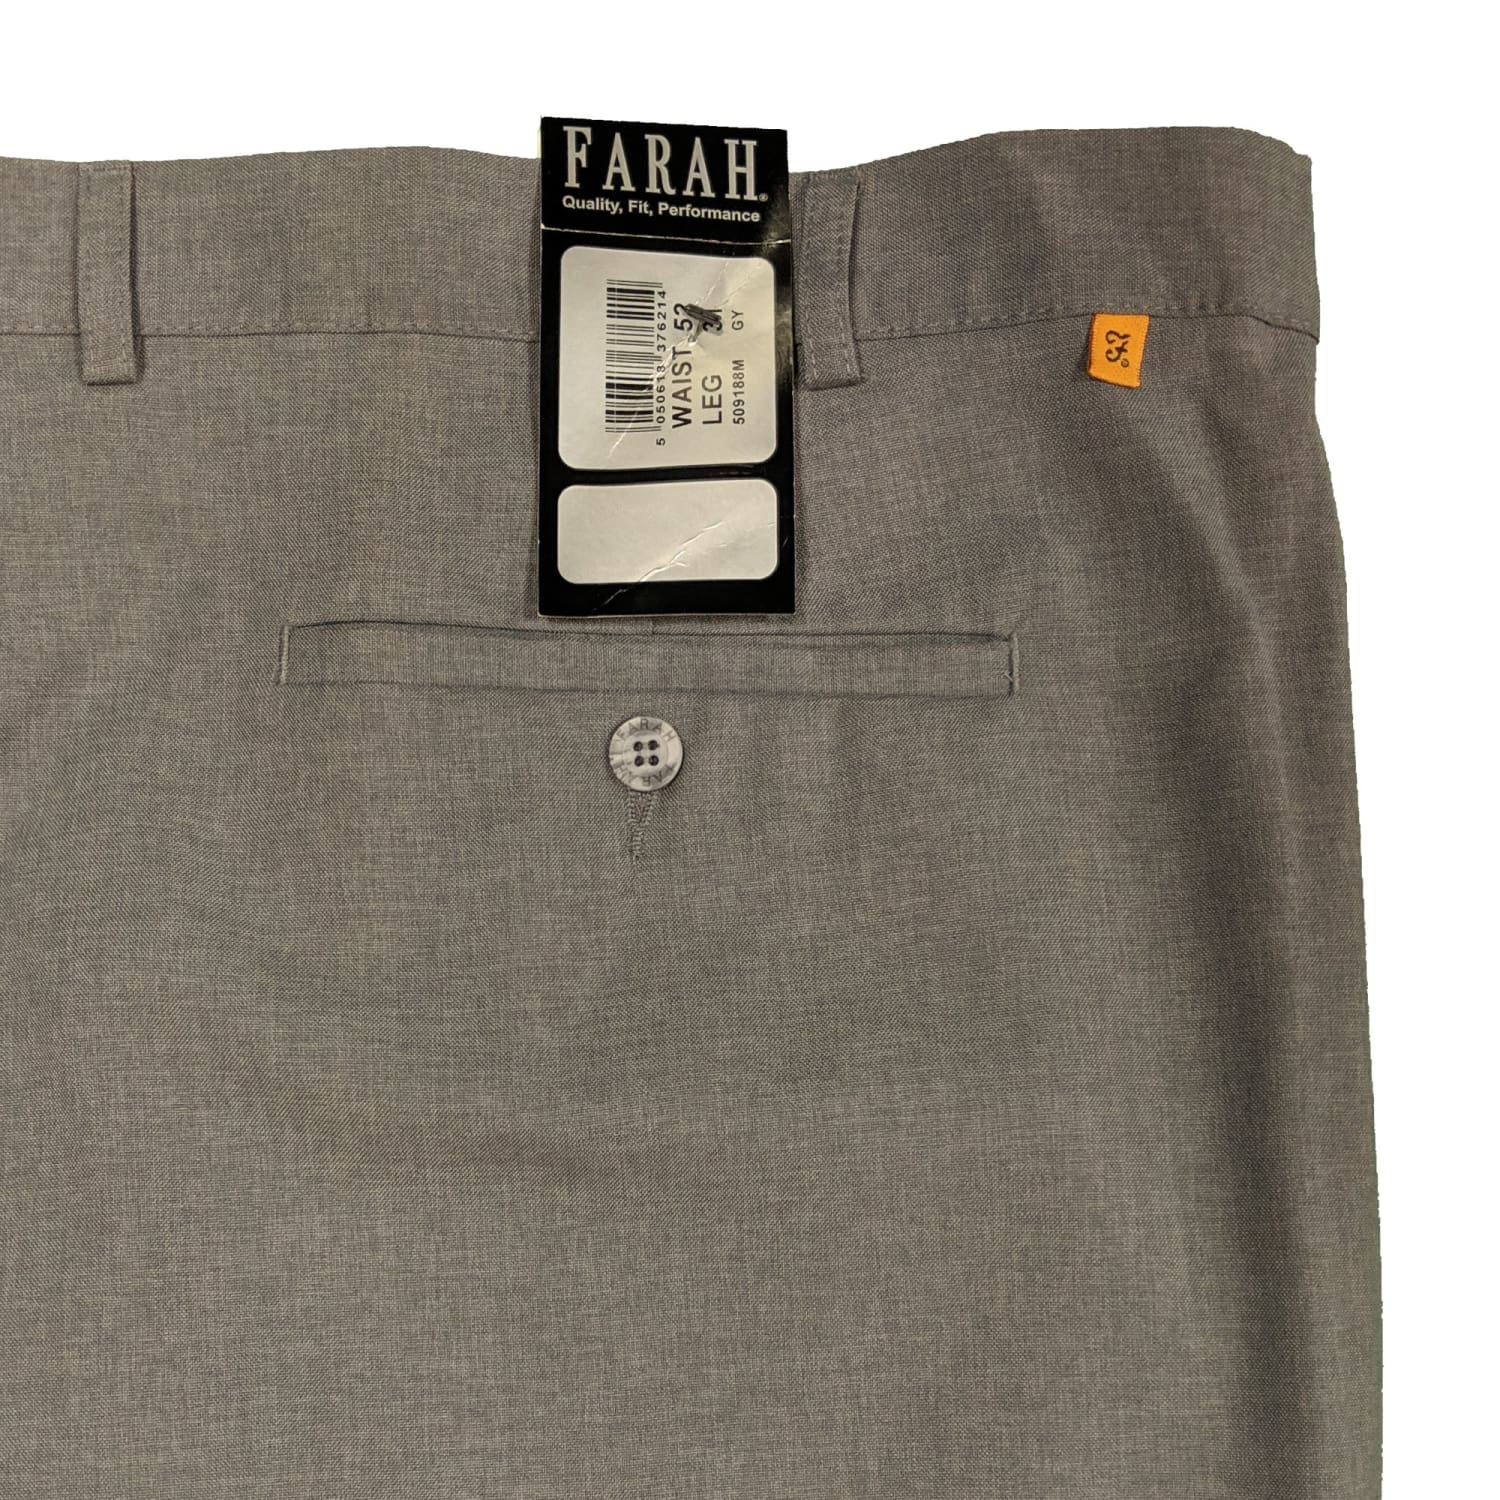 Farah Roachman regular fit smart trousers in grey | ASOS